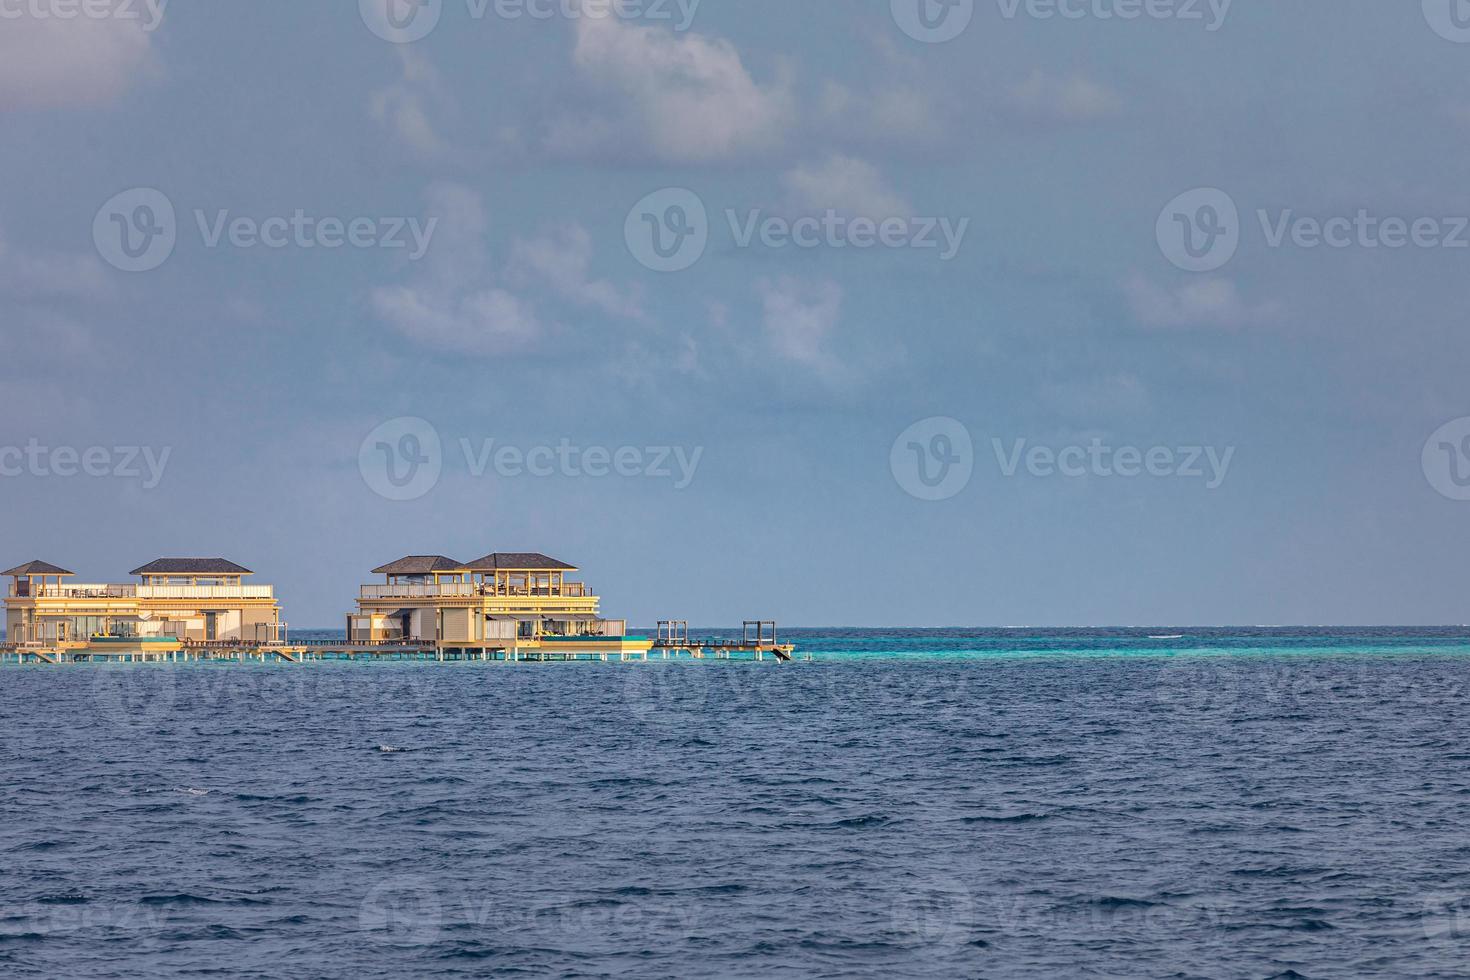 resort de villas aquáticas. Ilha Maldivas, Oceano Índico. vista do barco, bangalôs de luxo exótico sobre a água. conceito de viagens e turismo de verão, elementos de arquitetura na água foto